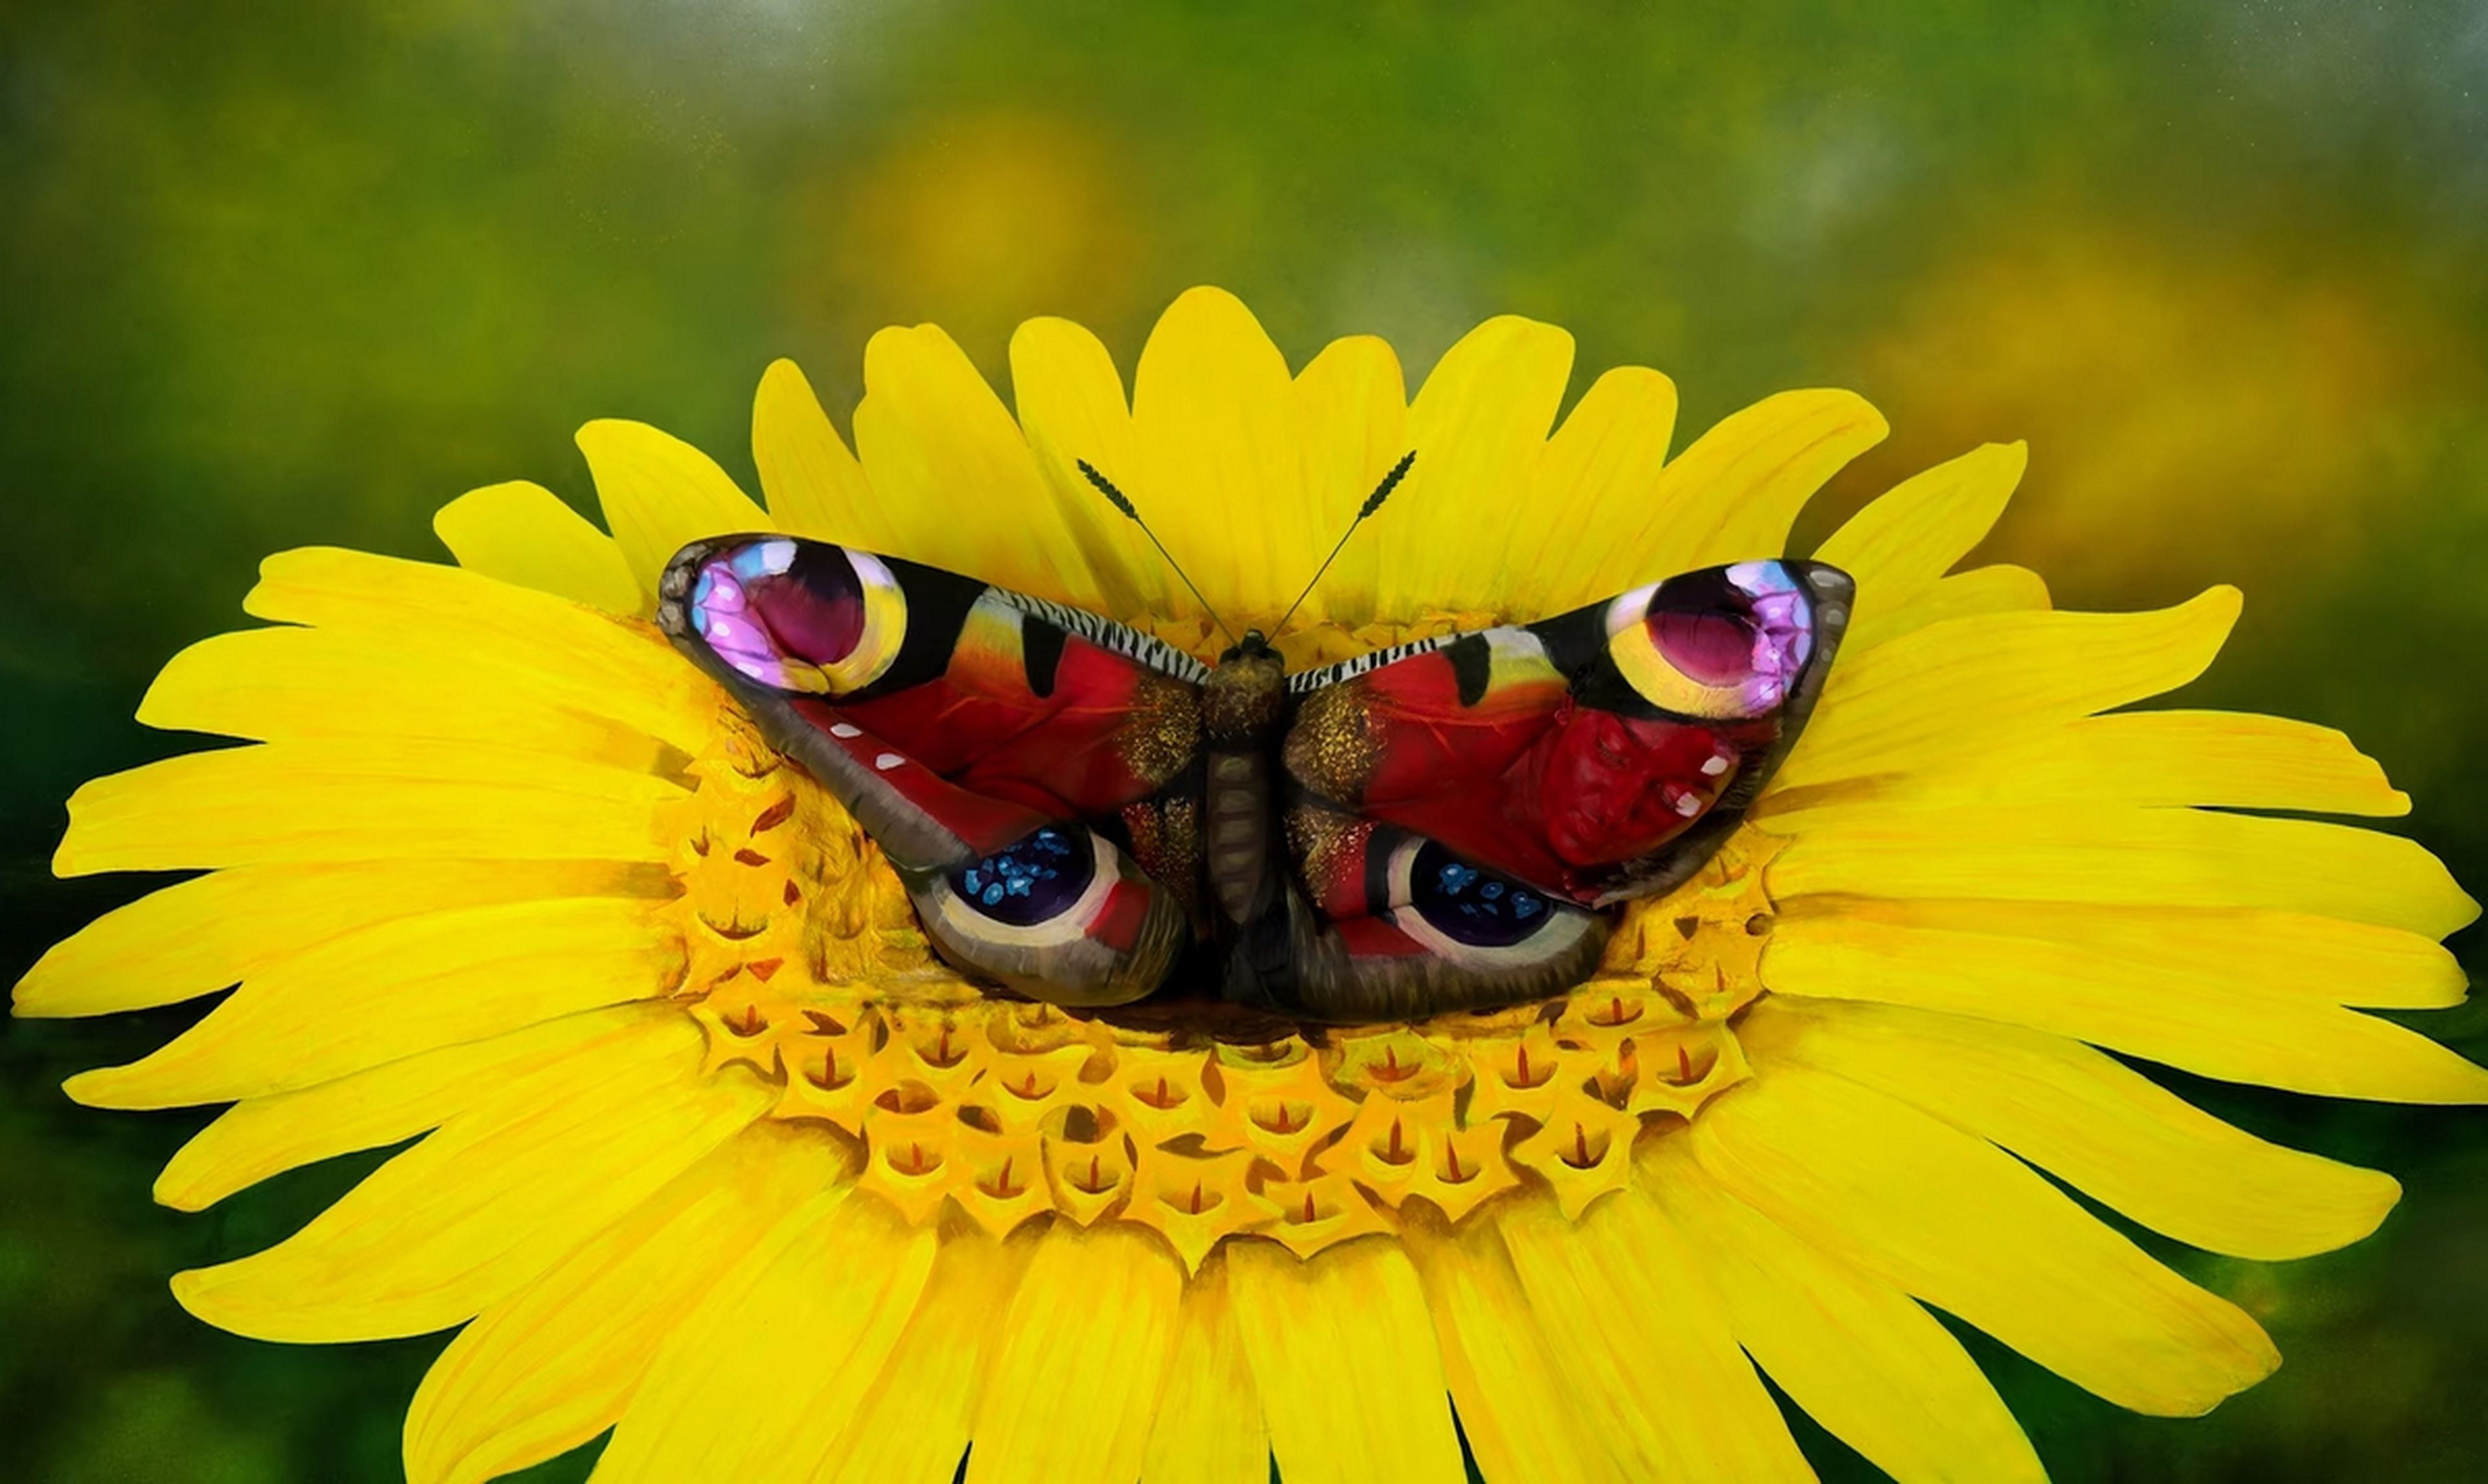 Las ilusiones ópticas de Johannes Stötter: esto no es una mariposa